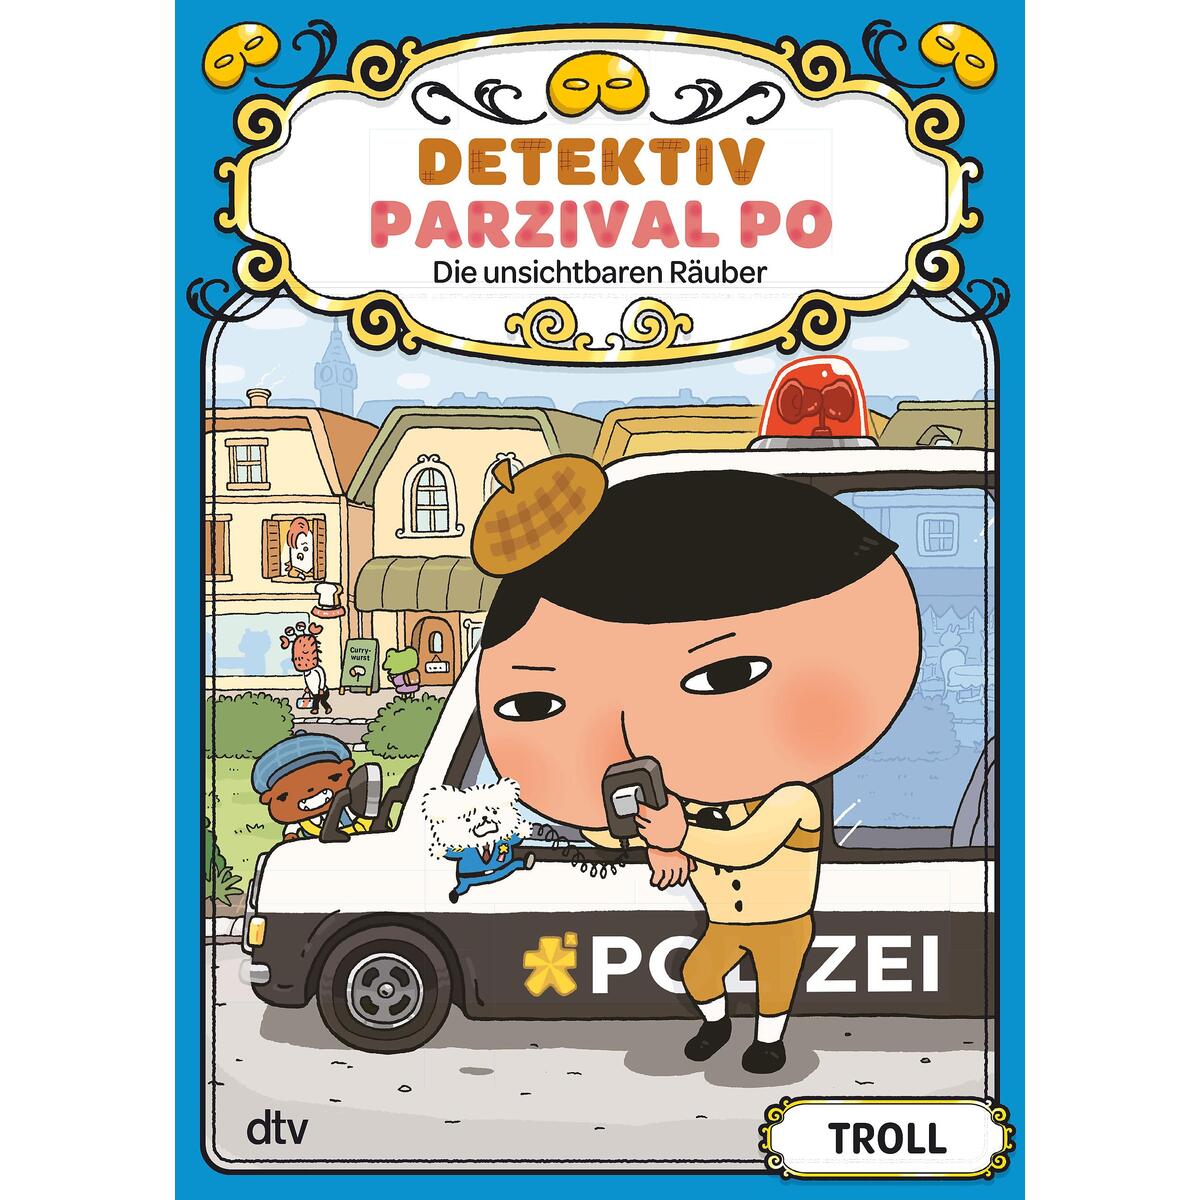 Detektiv Parzival Po (3) - Die unsichtbaren Räuber von dtv Verlagsgesellschaft